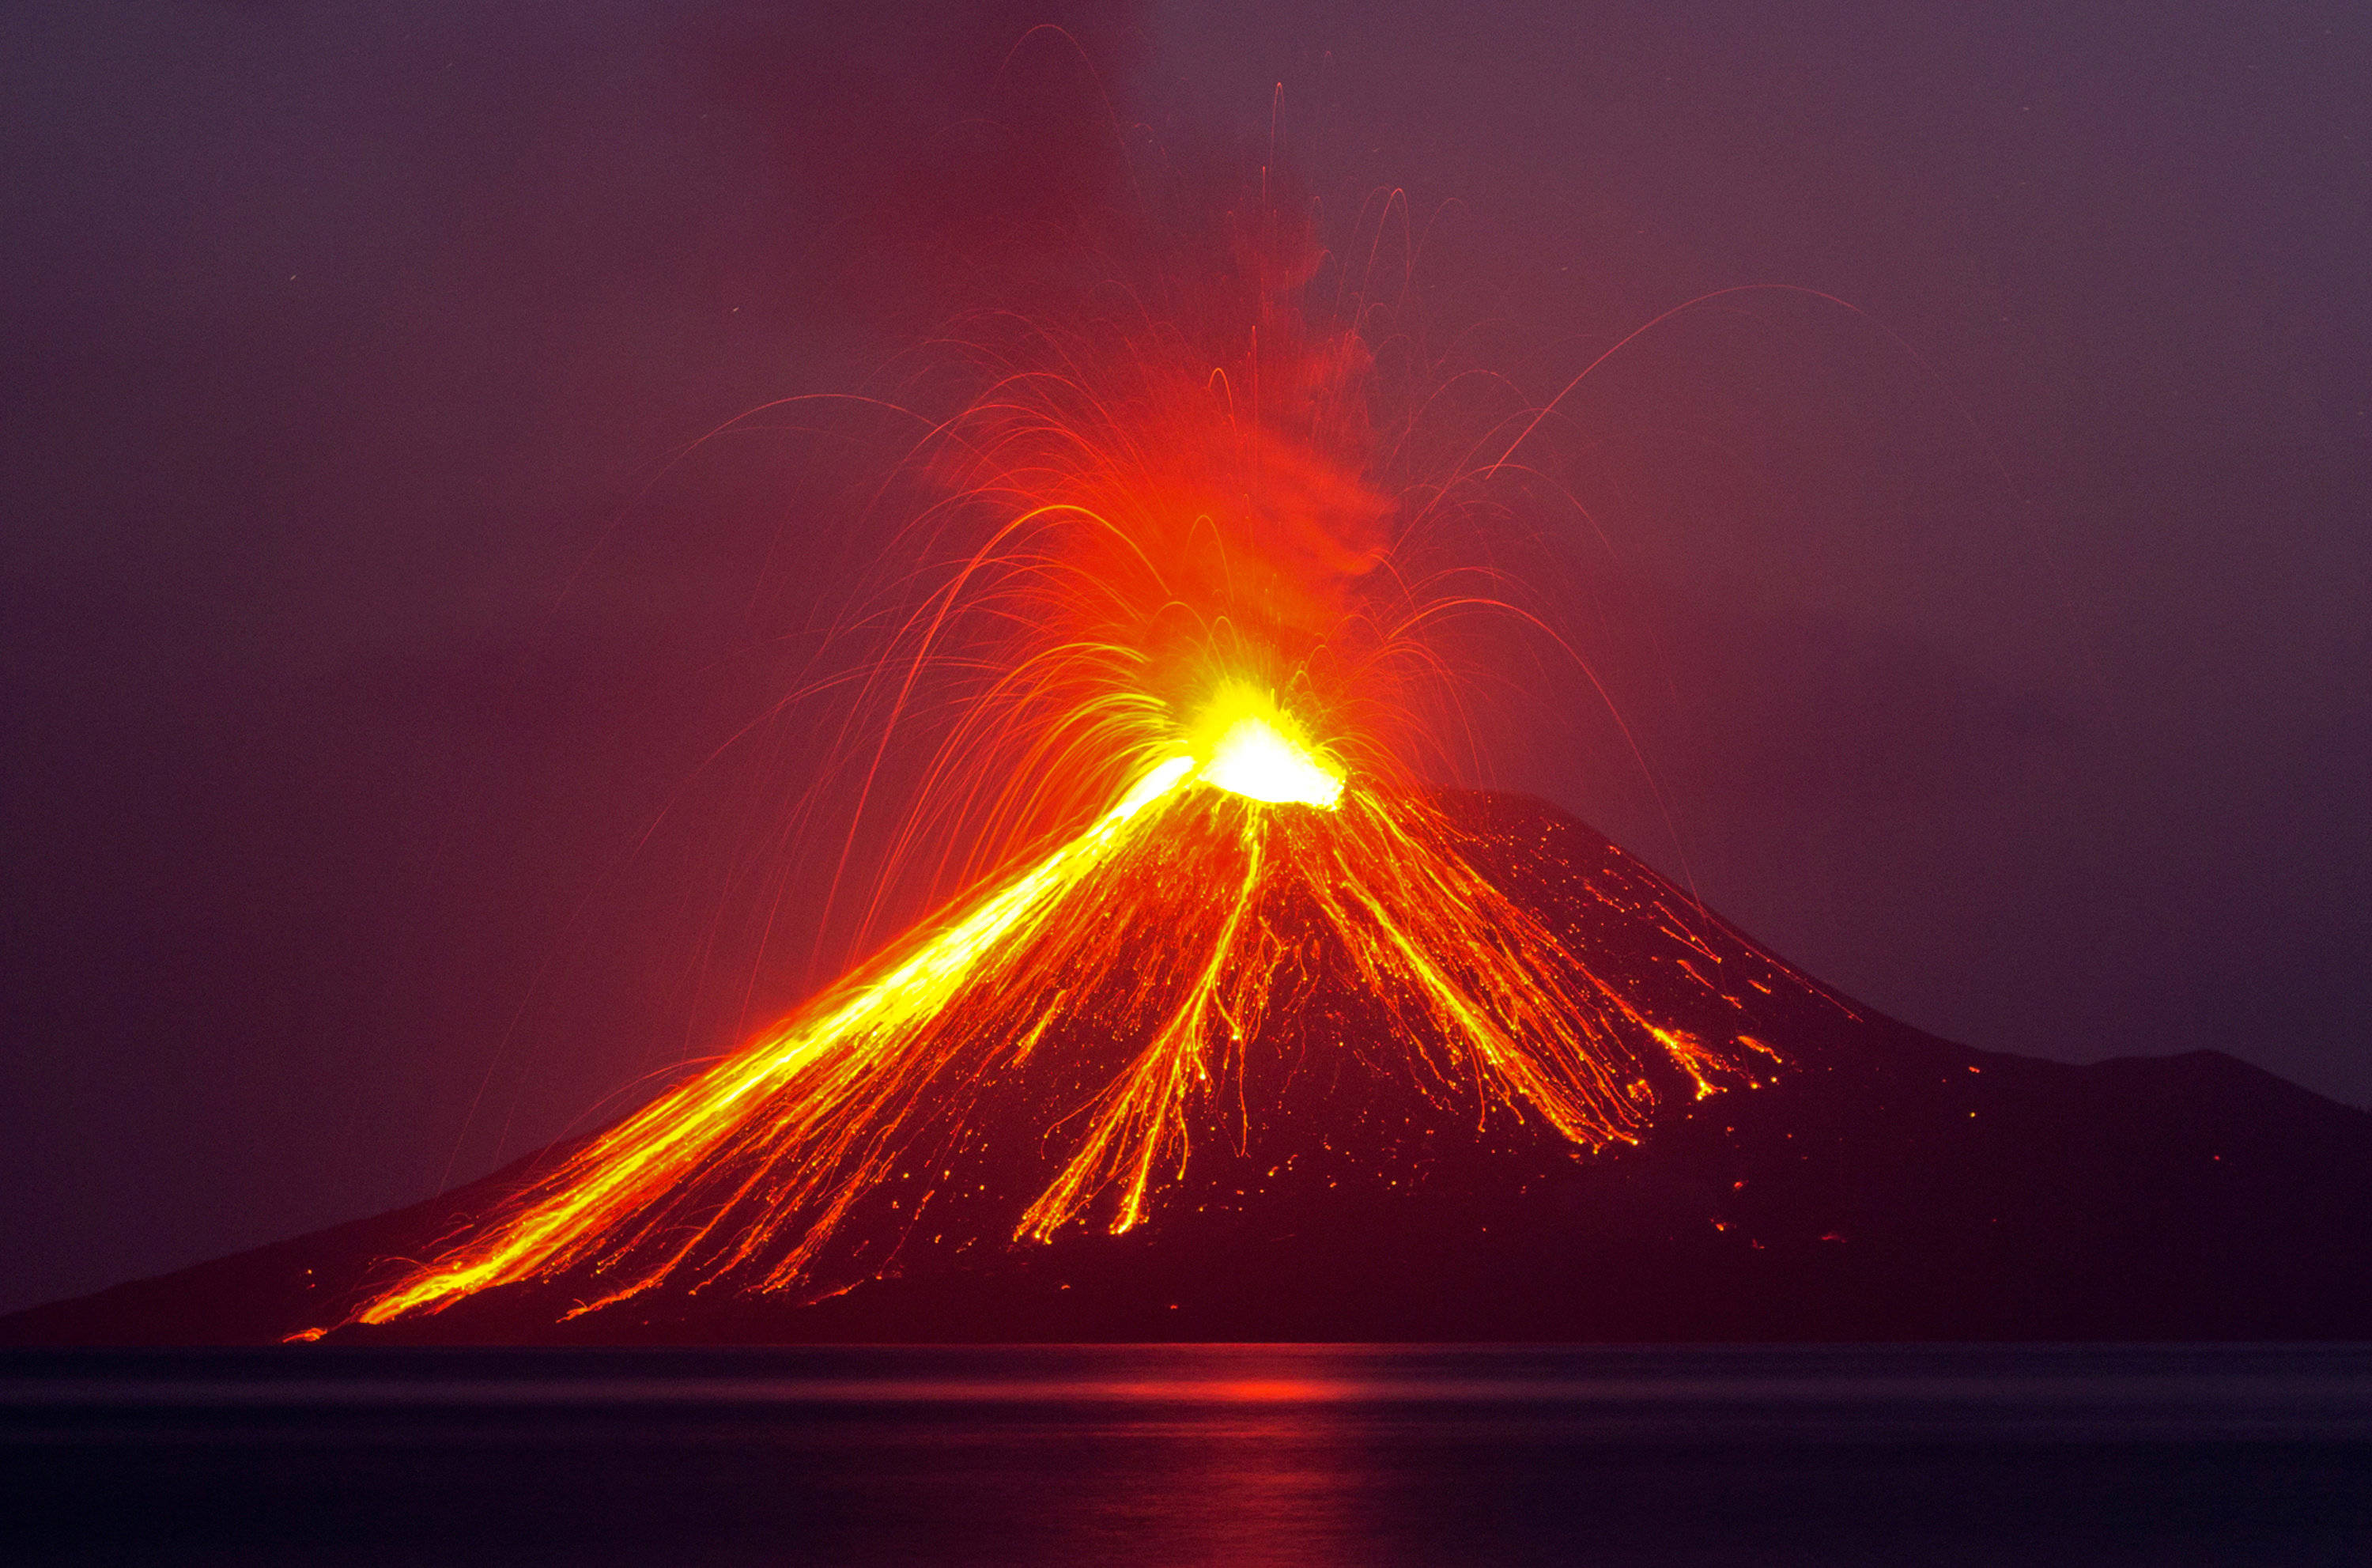 超级火山的定义超级火山是指具有极大规模喷发能力的火山系统,其爆发